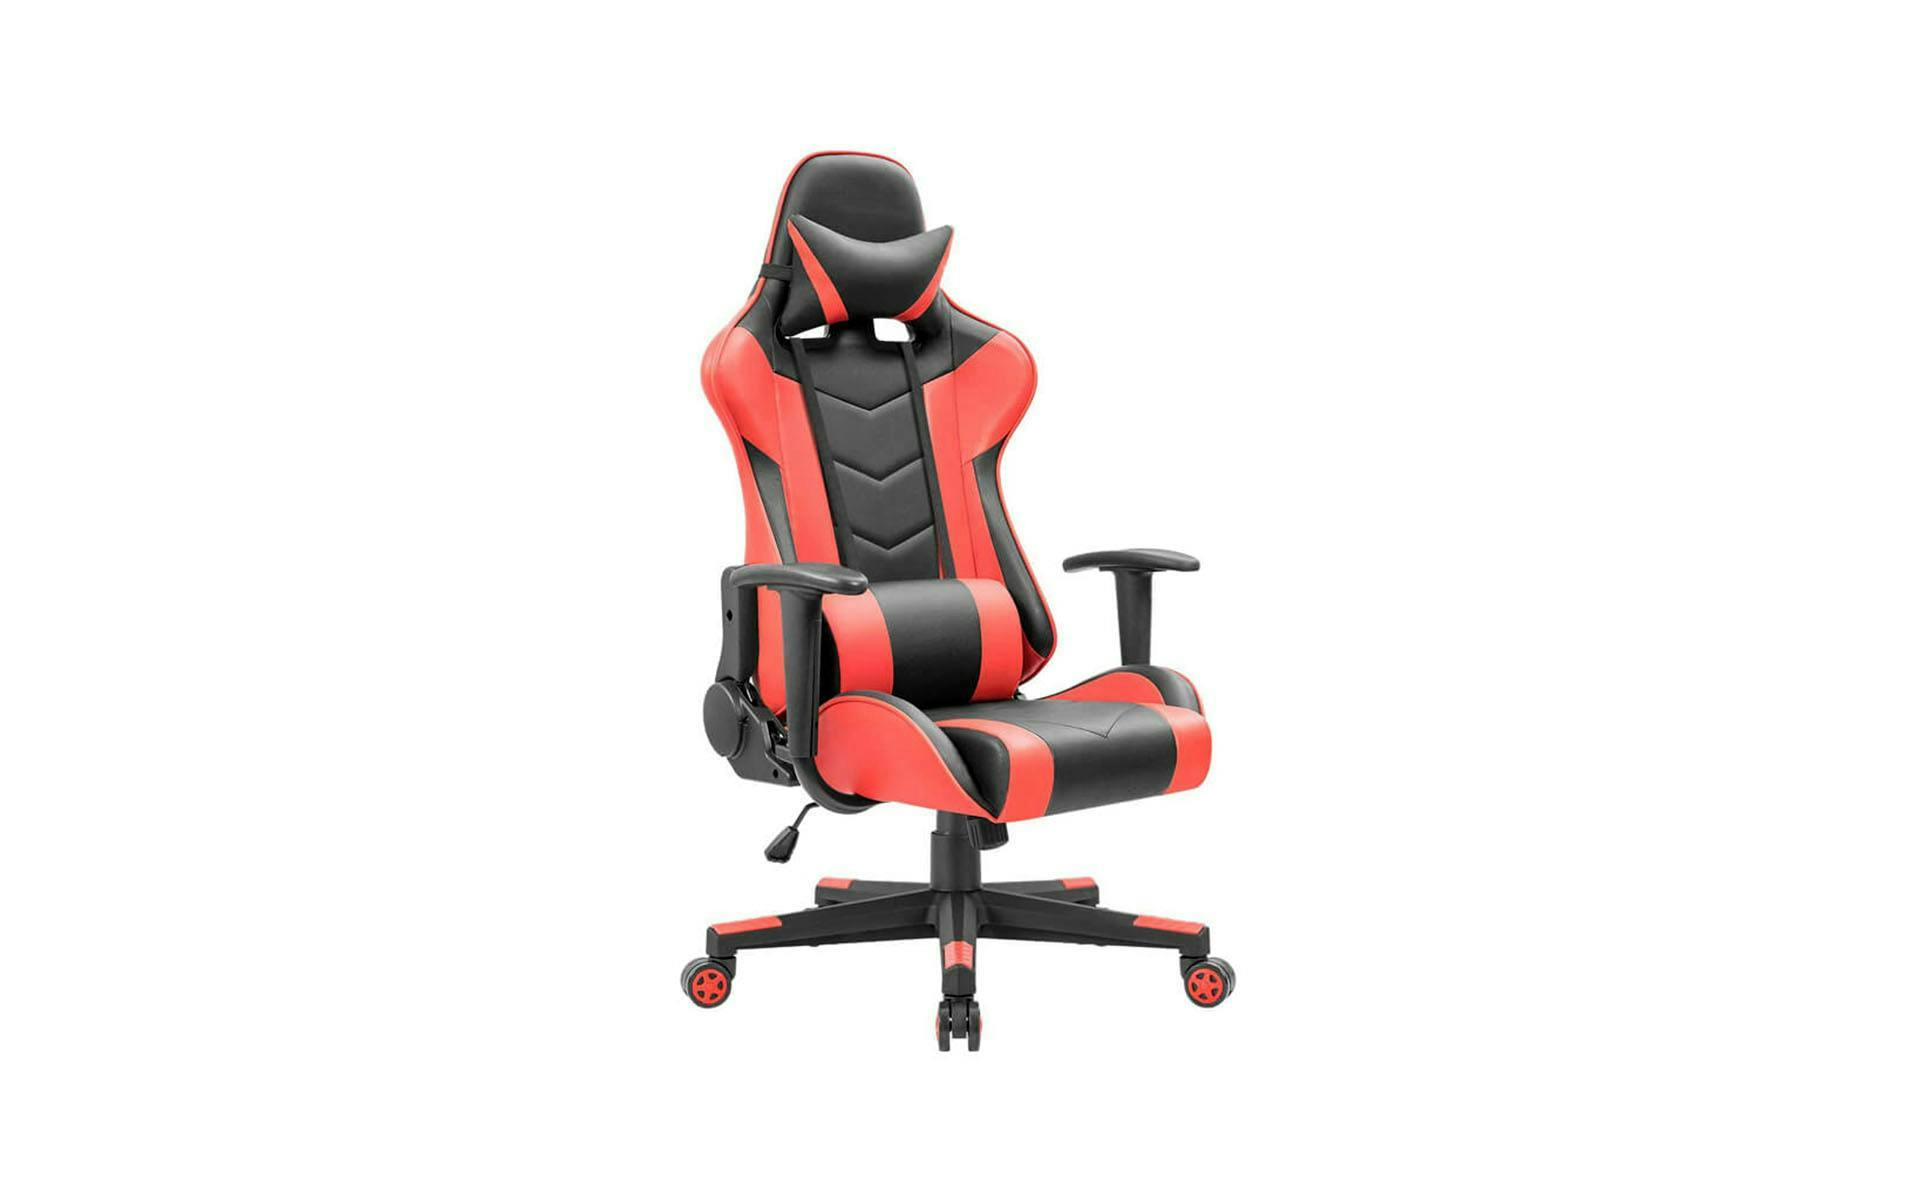 Schwarz-roter Zocker Stuhl in klassischer "Racing" Form